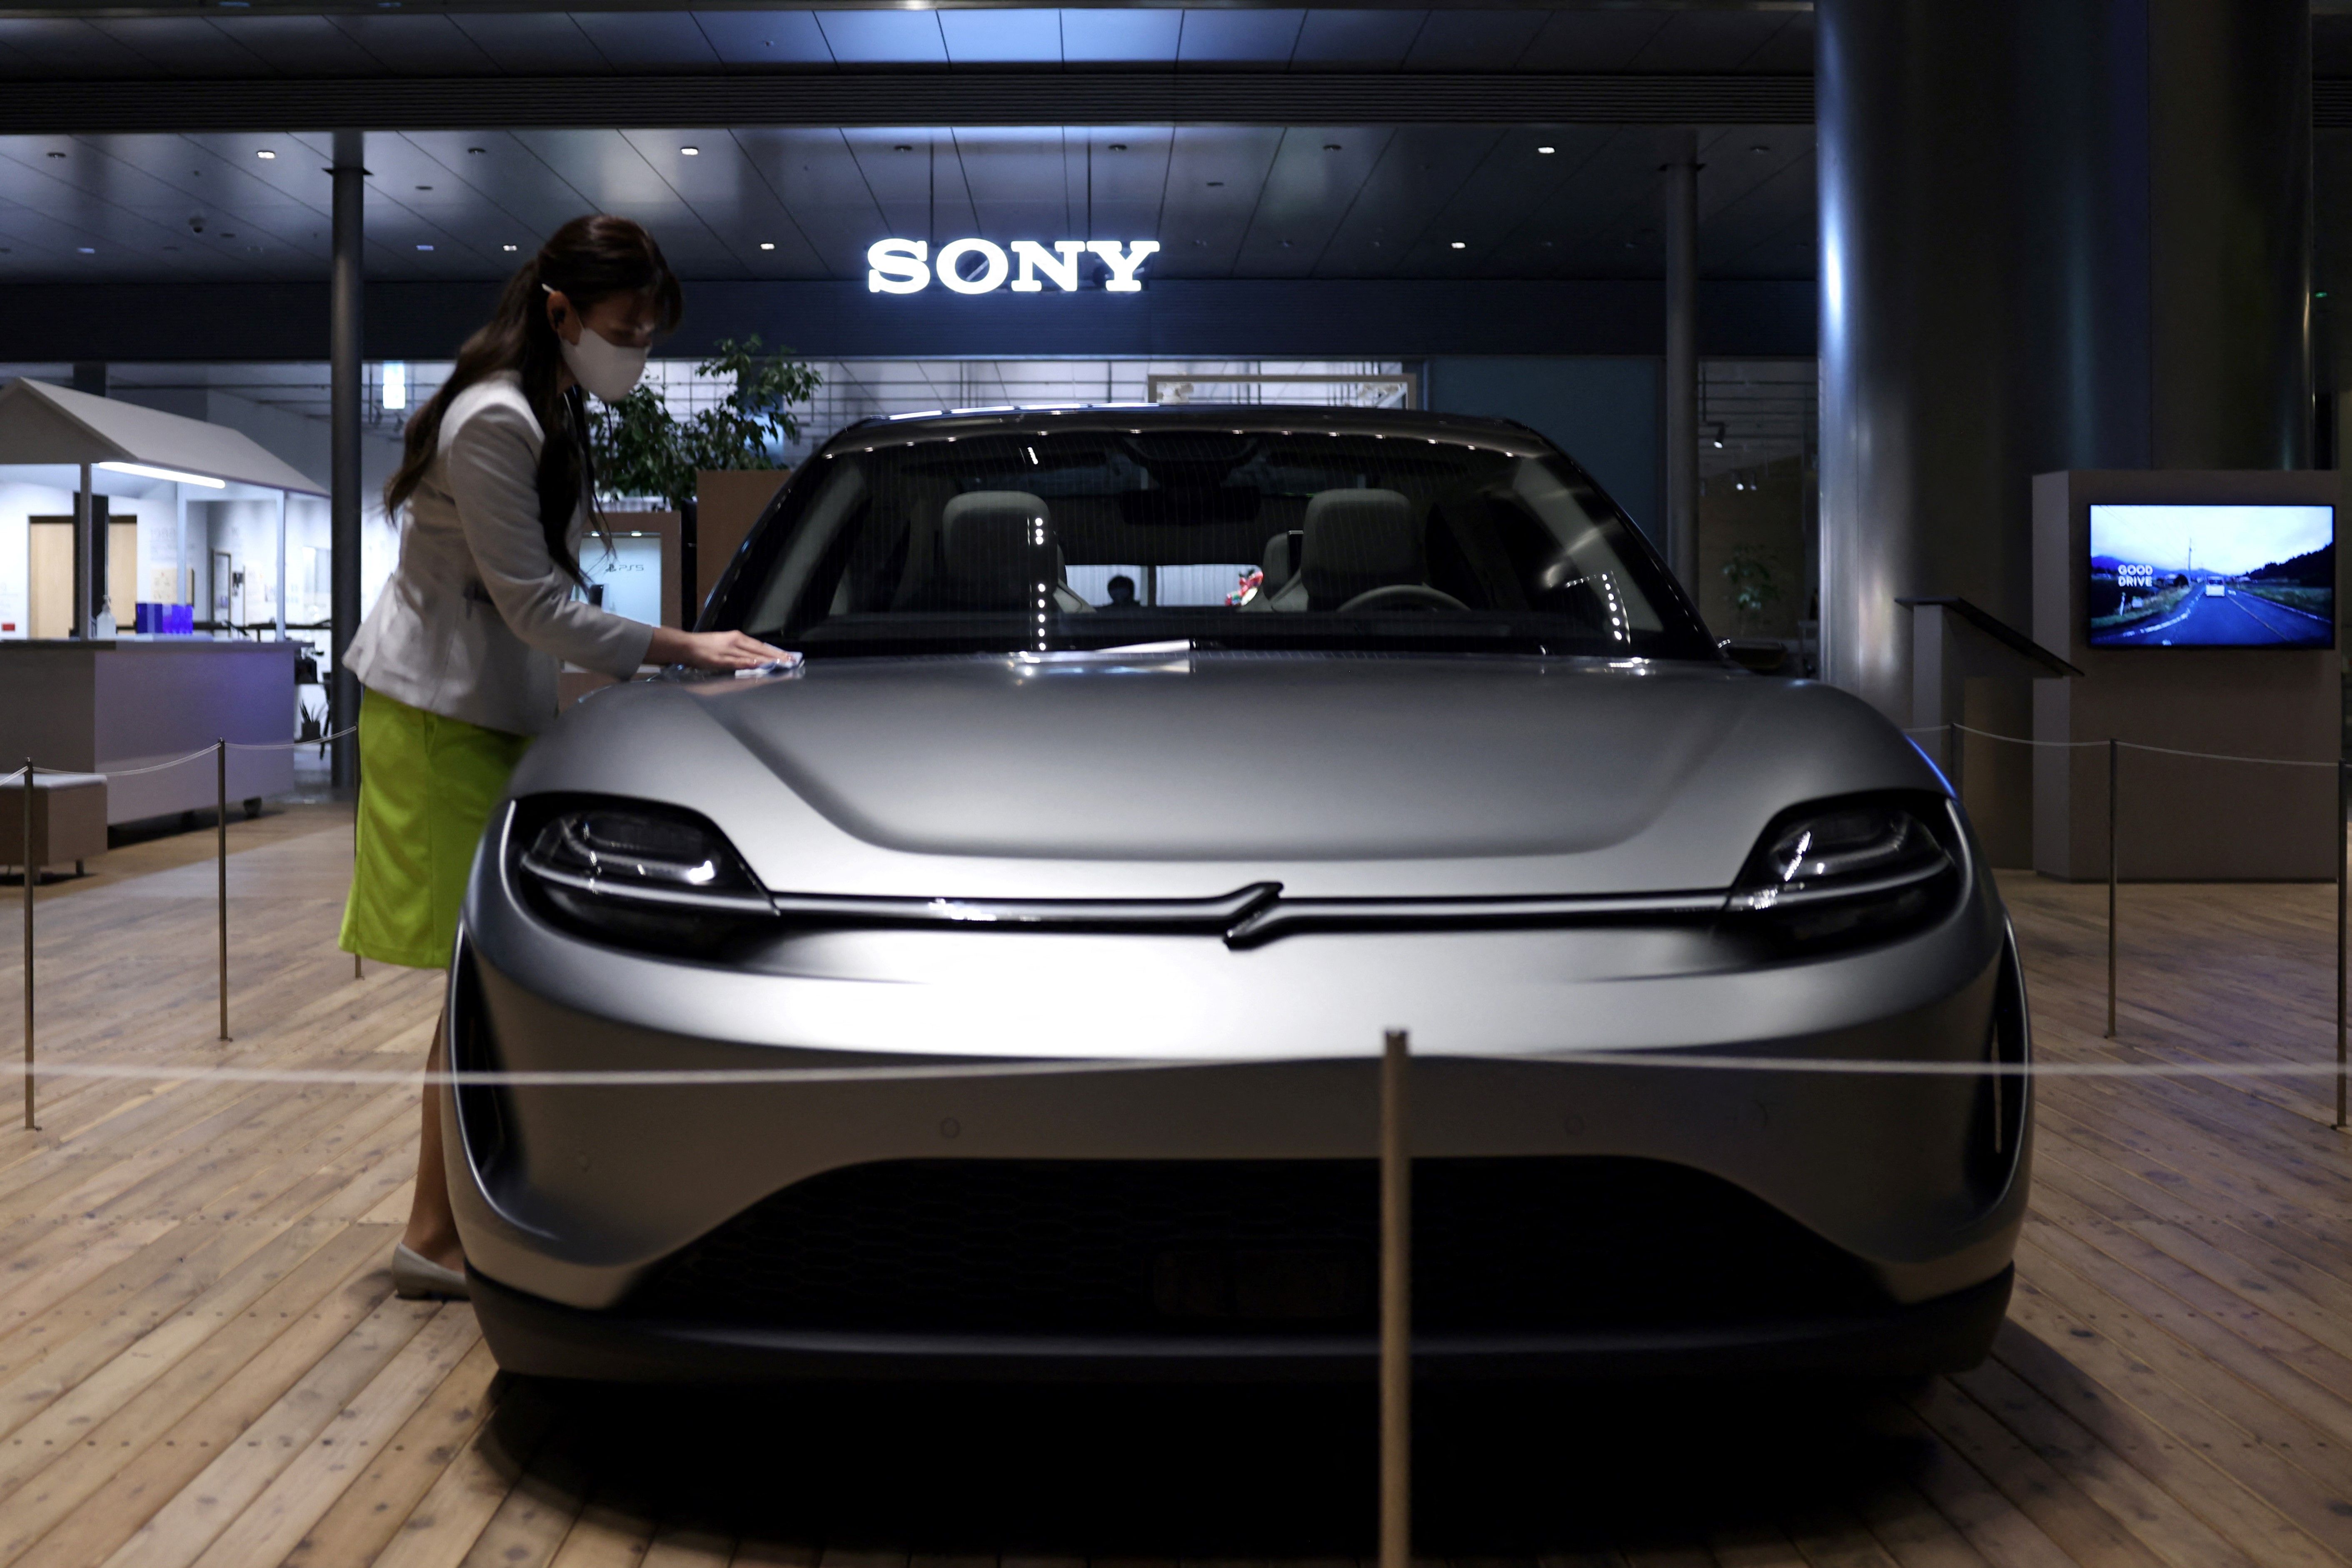 Honda et Sony veulent lancer ensemble une nouvelle marque de véhicules électriques. Sonys-vision-s-prototype-car-is-photographed-at-the-news-photo-1646407282